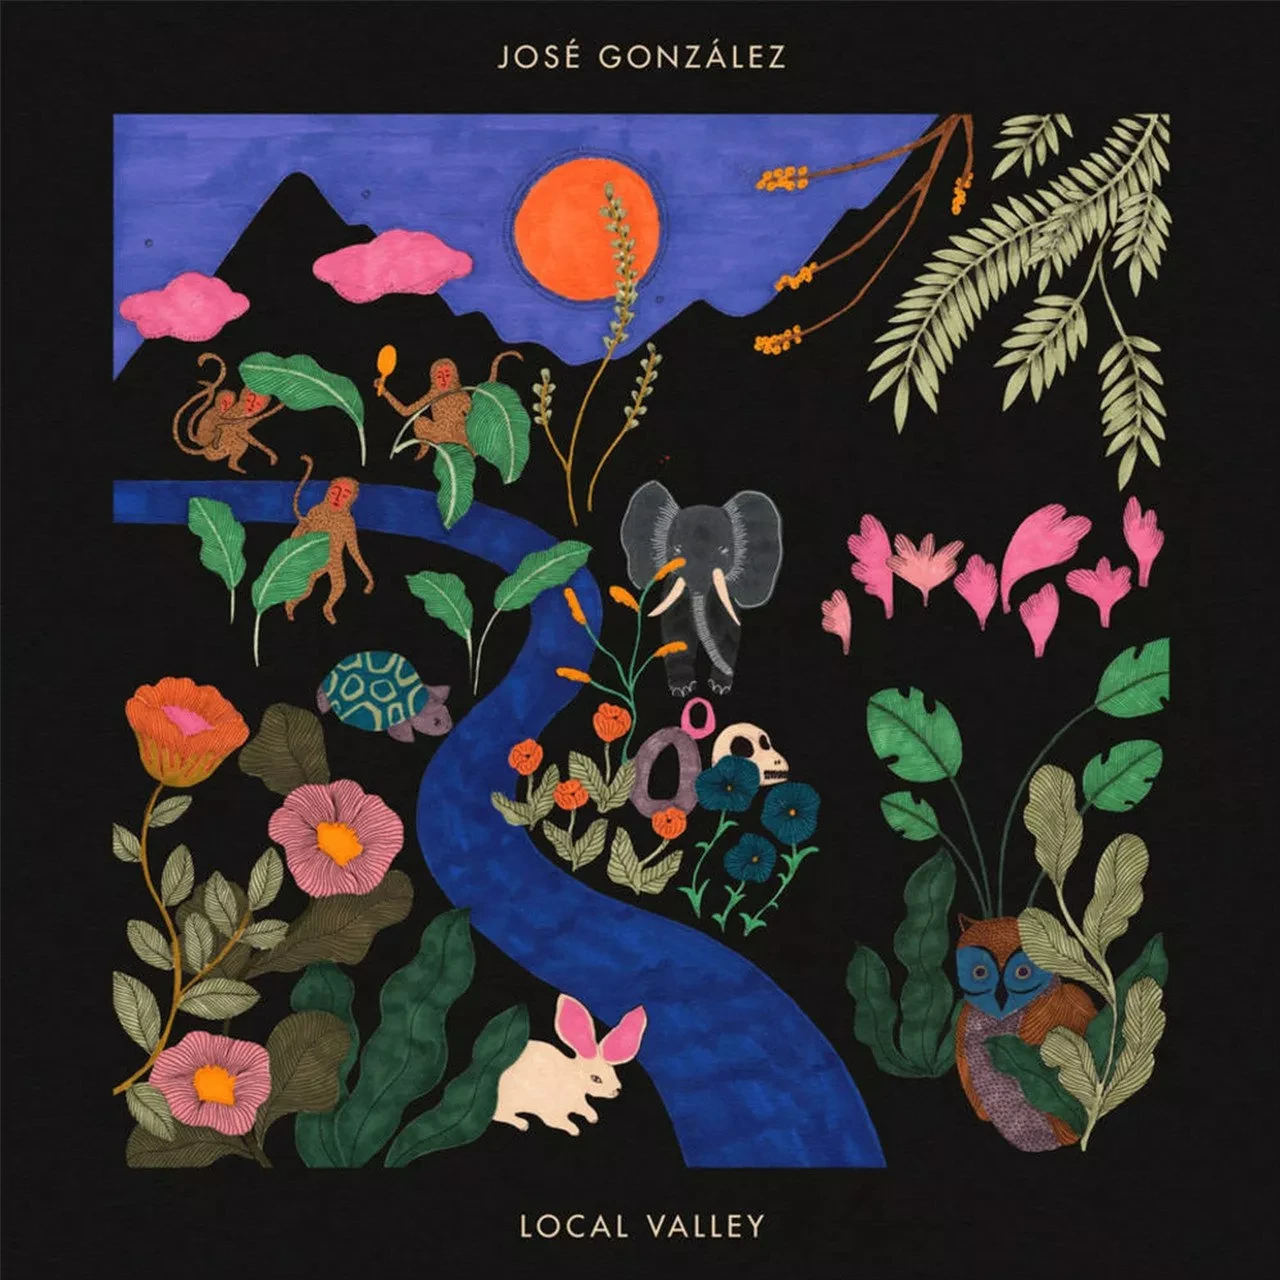 Вінілова пластинка "Local Valley" від José González — 1LP